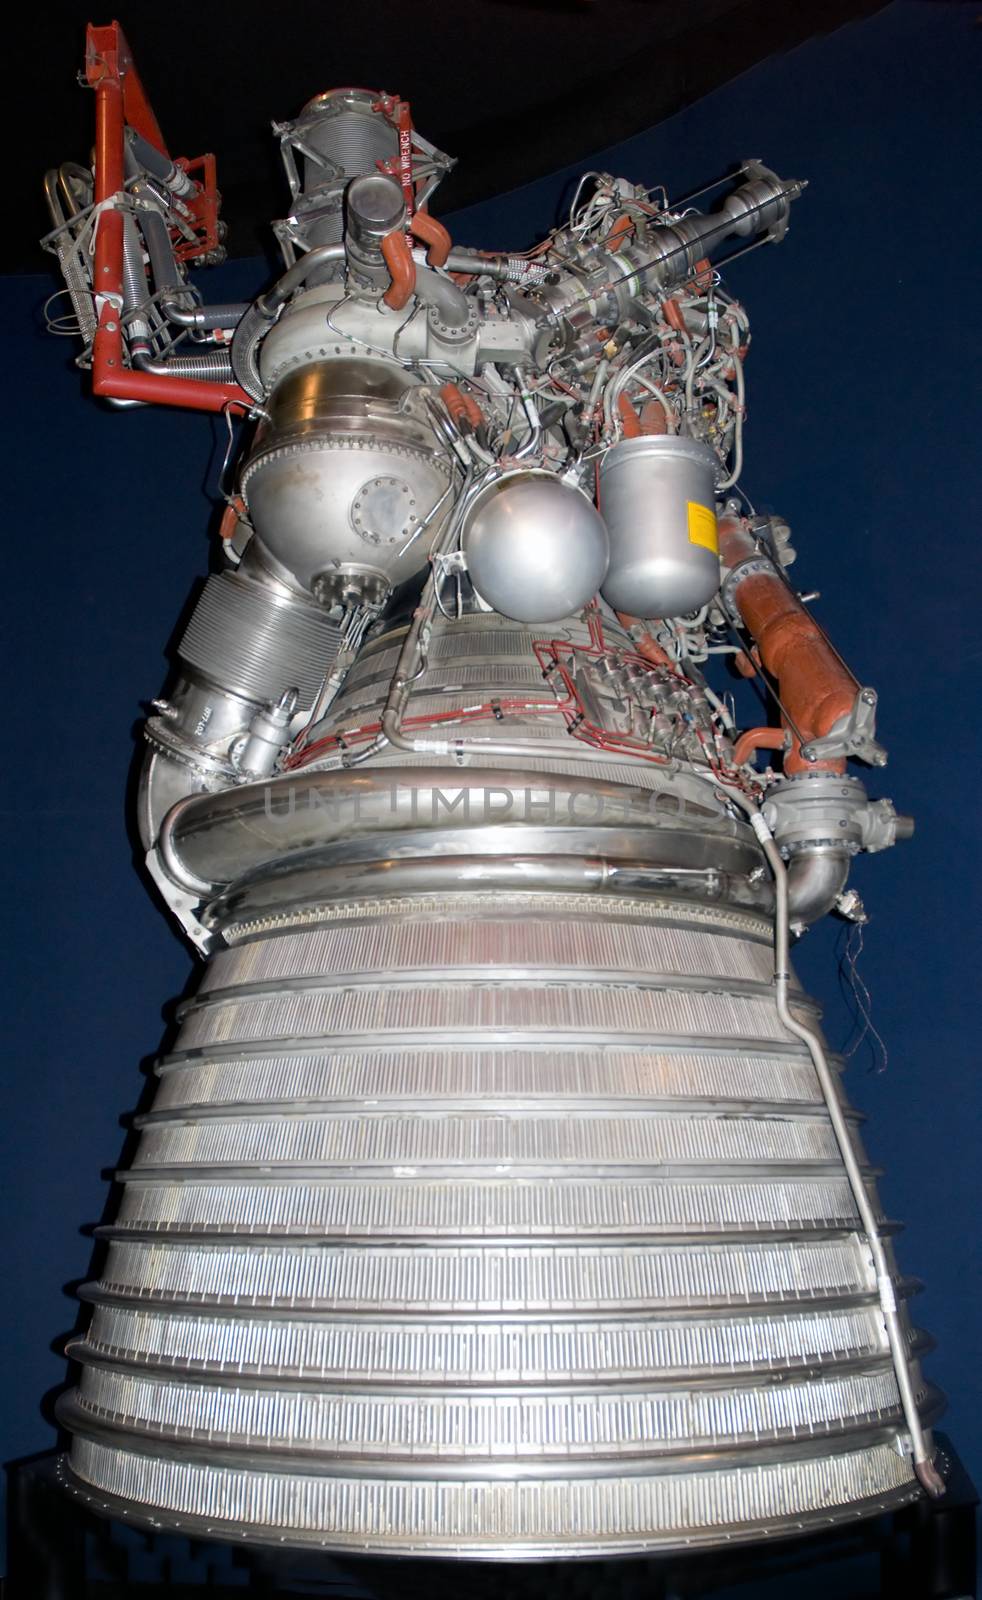 A Saturn V rocket motor